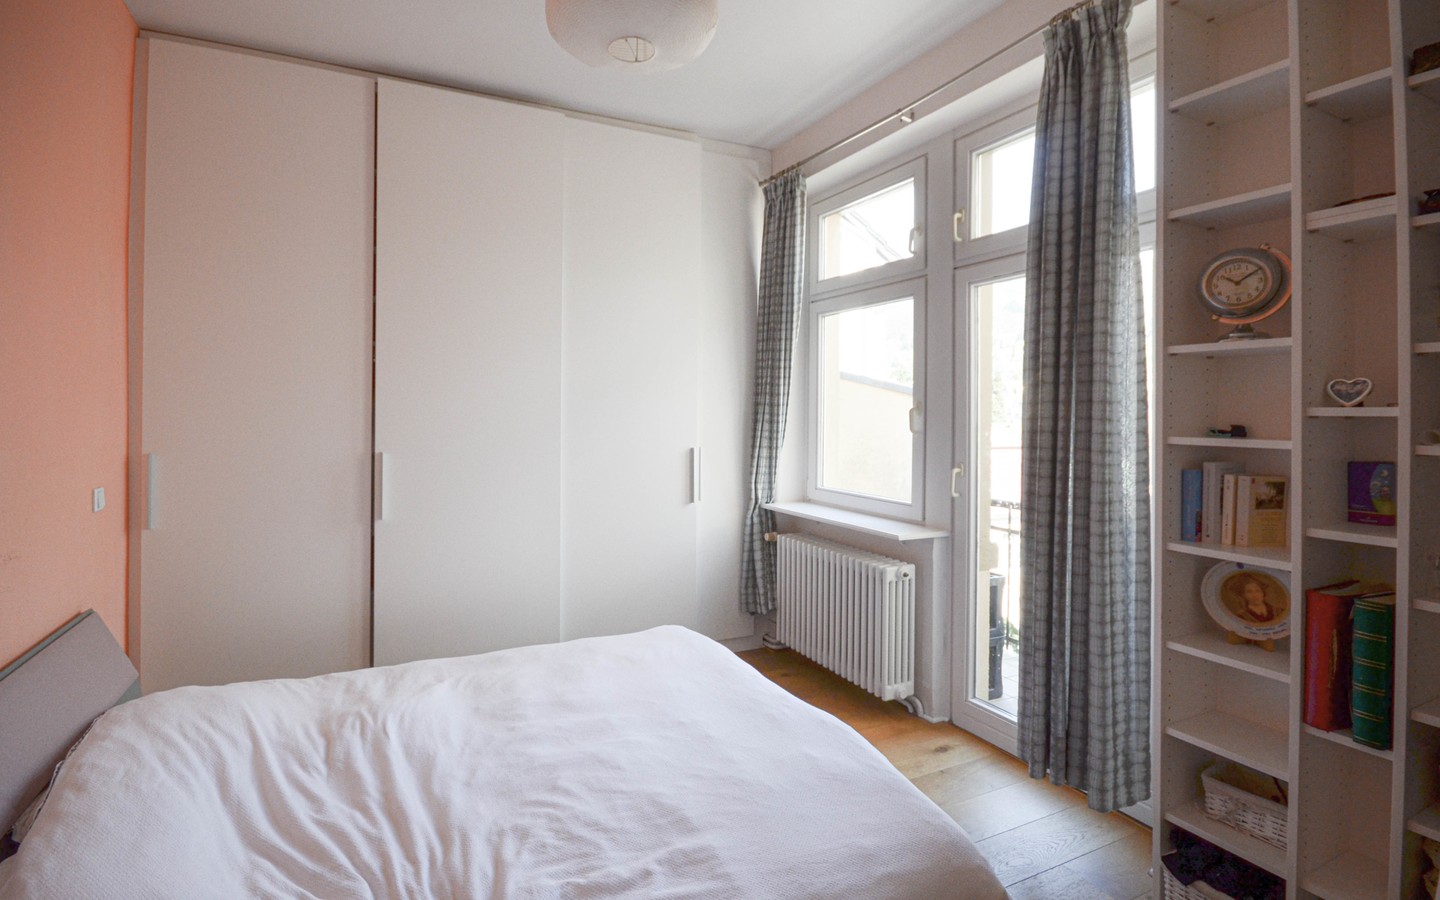 Schlafzimmer - Traumhaft schöne Fünfzimmerwohnung in Heidelberg-Neuenheim